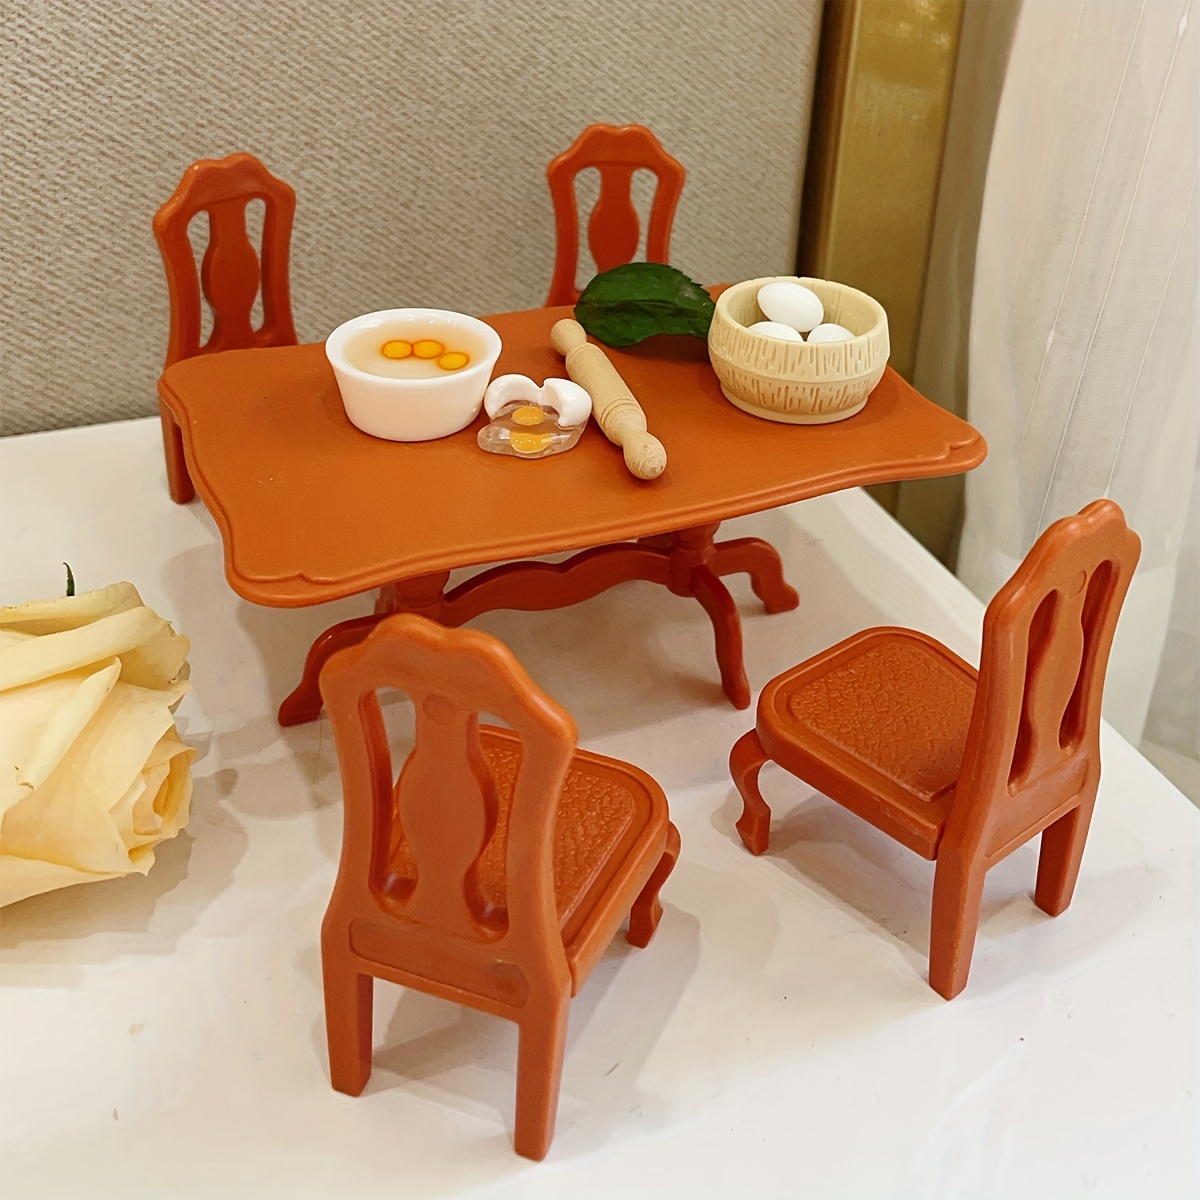 Mesa de comedor simple, mesa auxiliar plegable portátil, mesa auxiliar que  ahorra espacio, para cocina, restaurante, sala de estar, jardín, alta